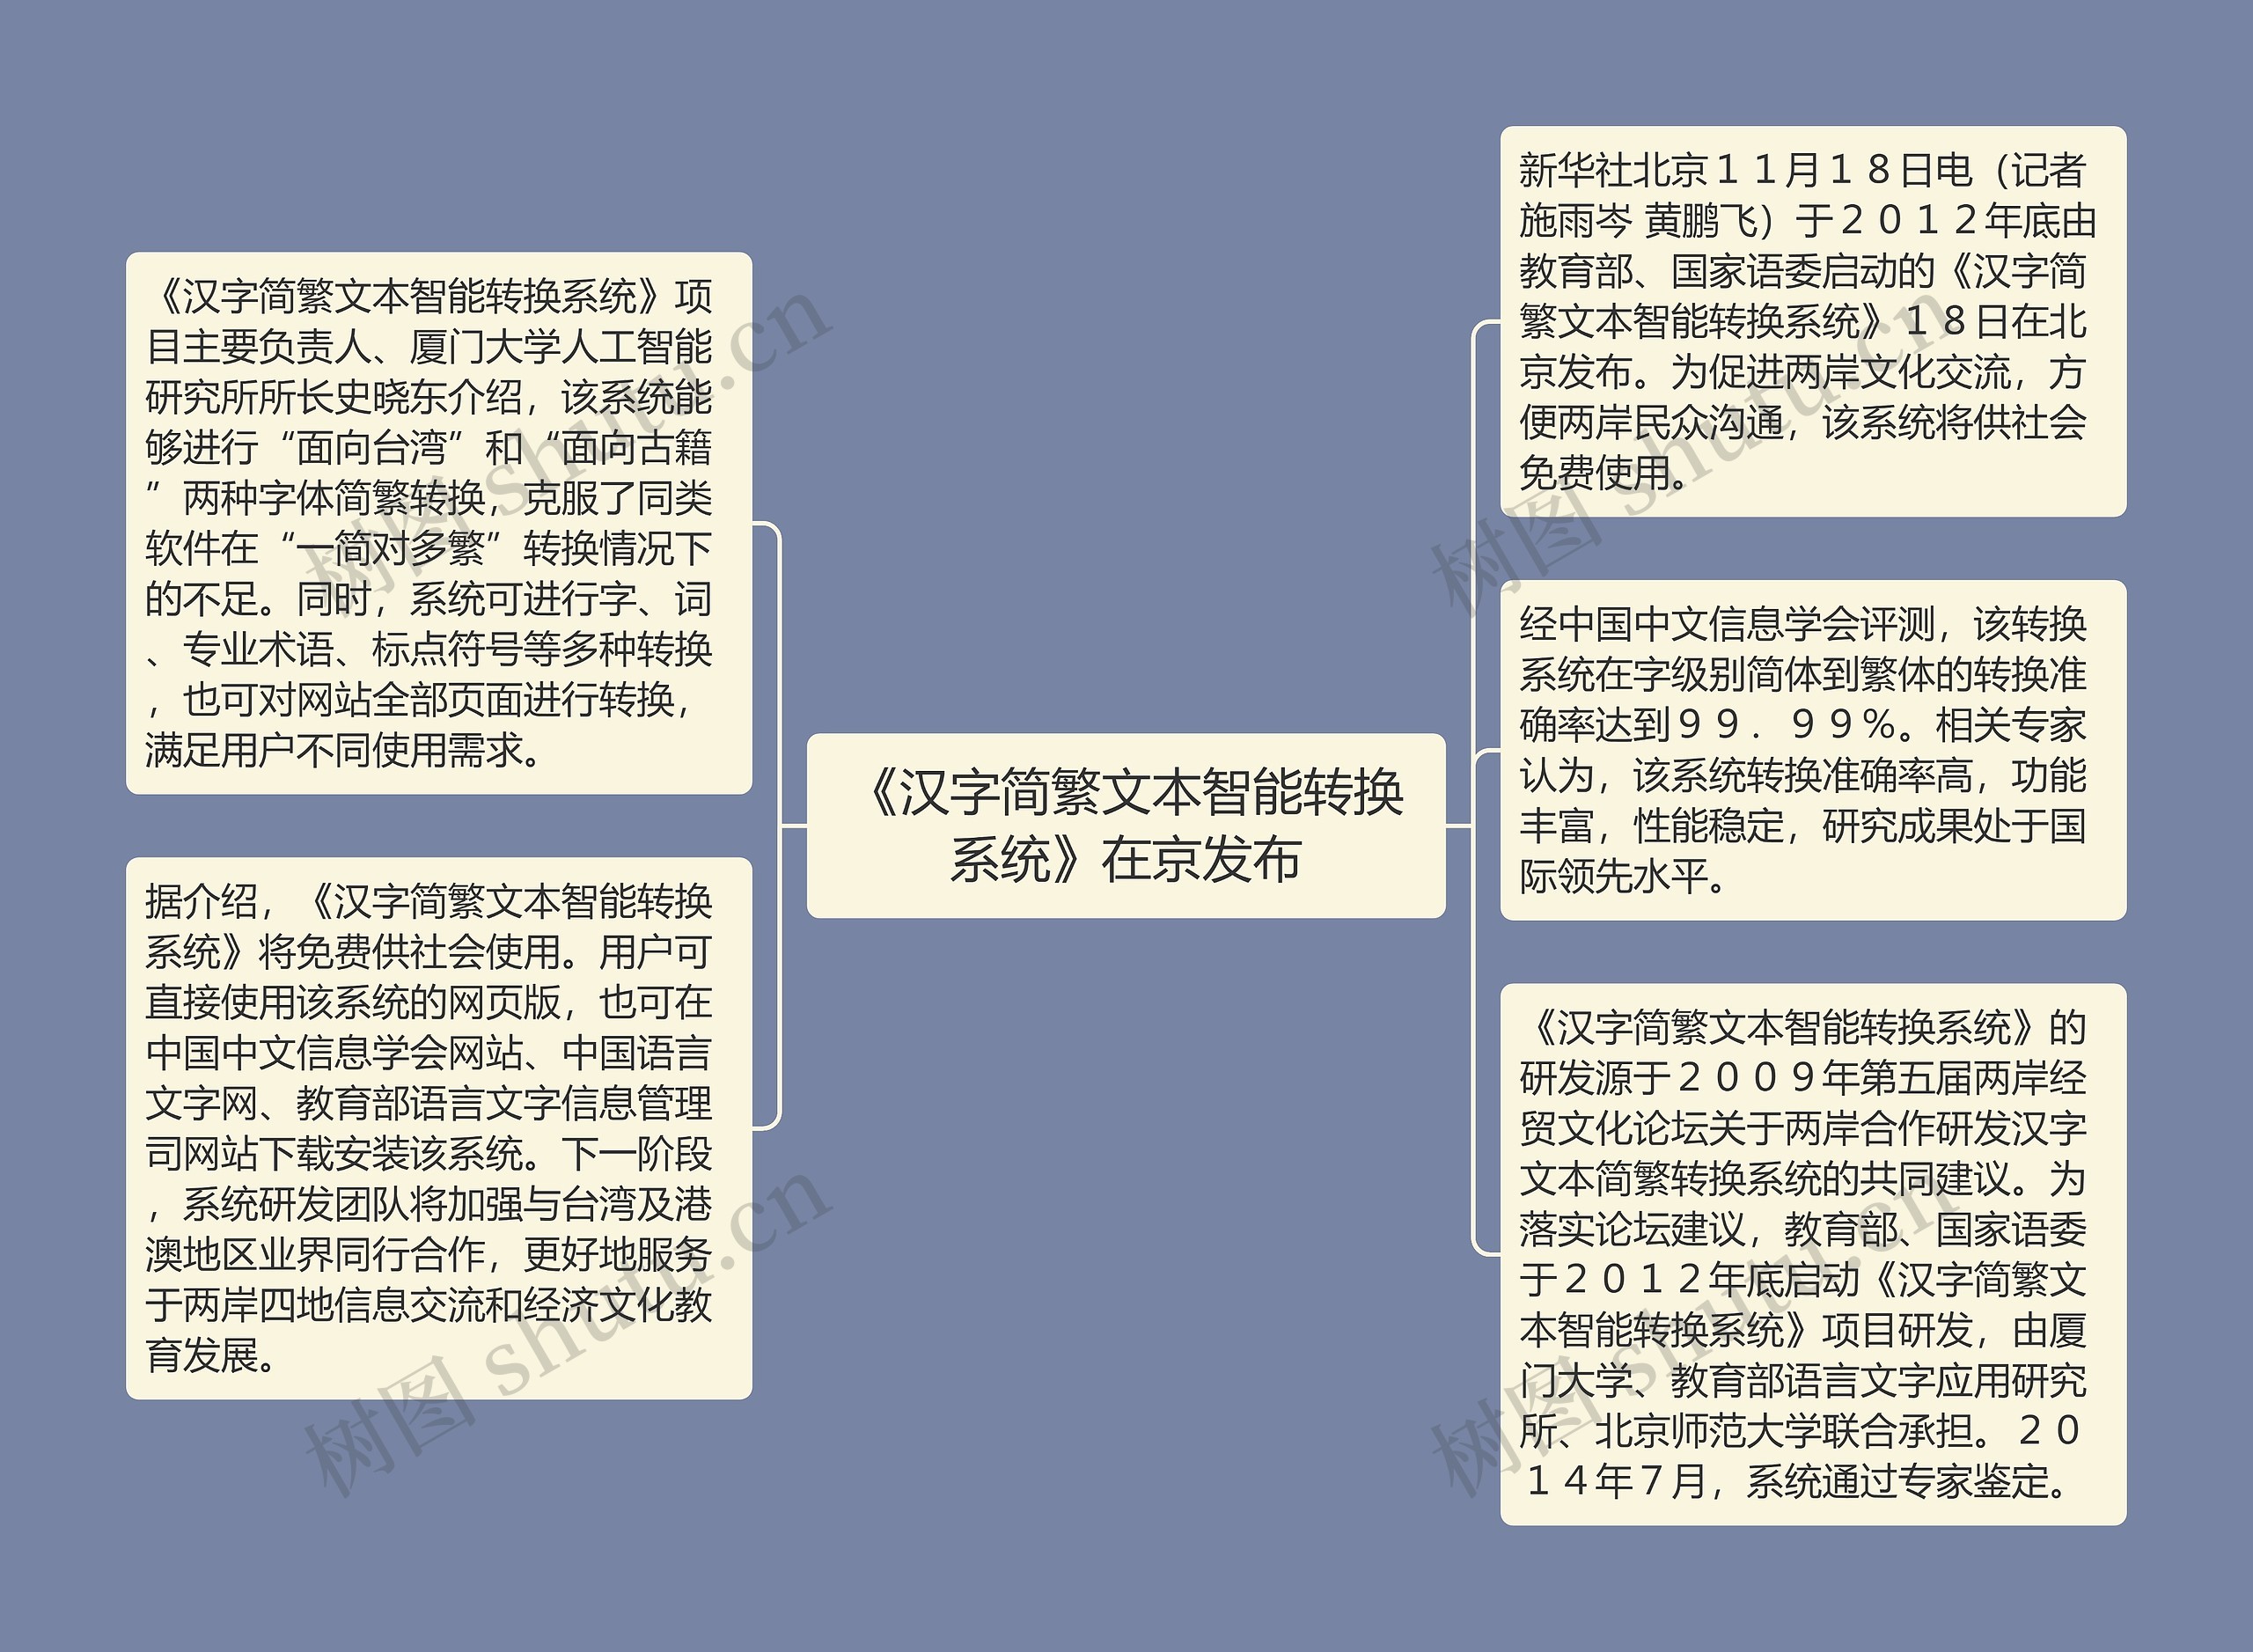 《汉字简繁文本智能转换系统》在京发布思维导图